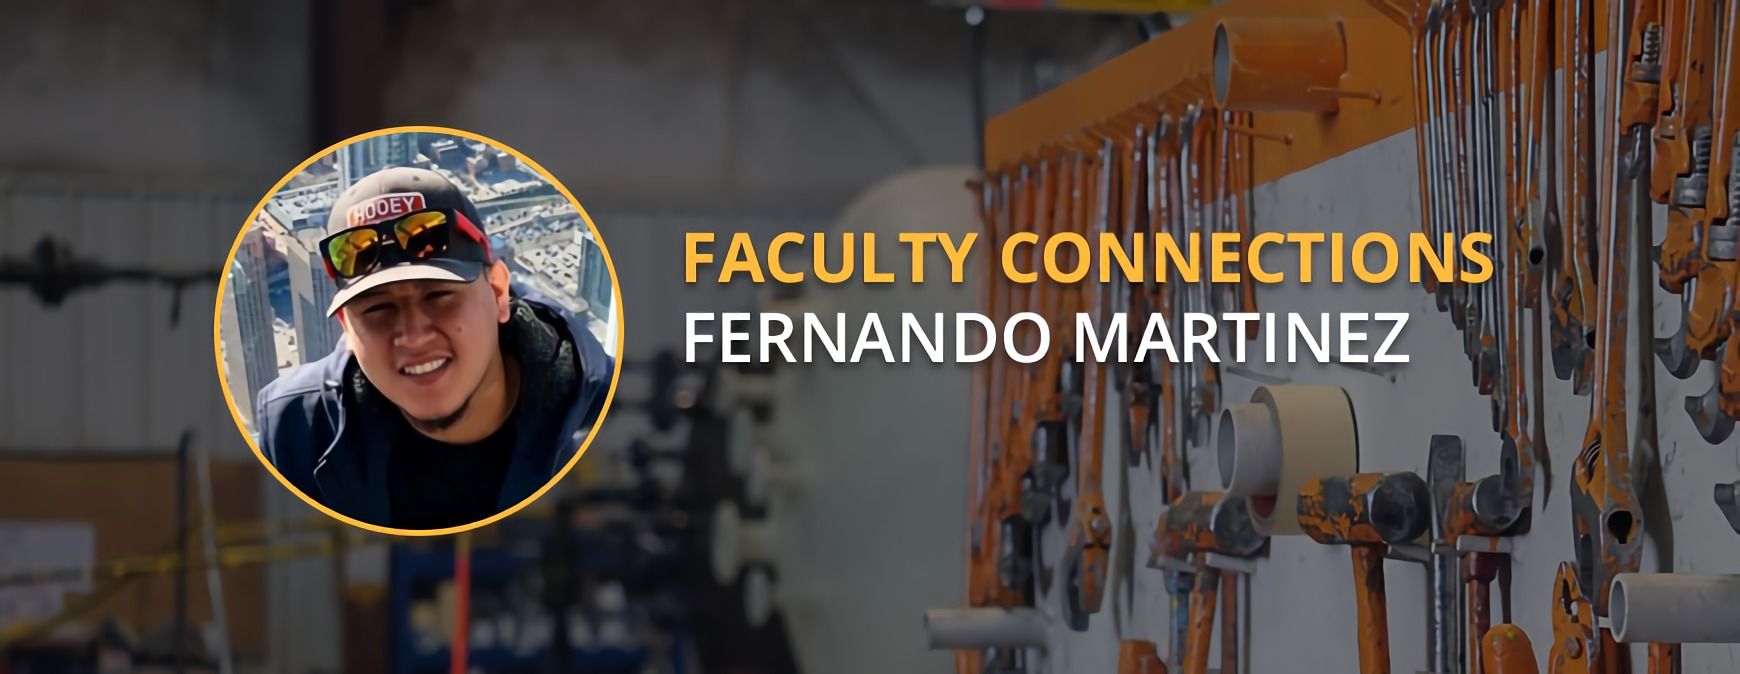 Fernando Martinez faculty connection